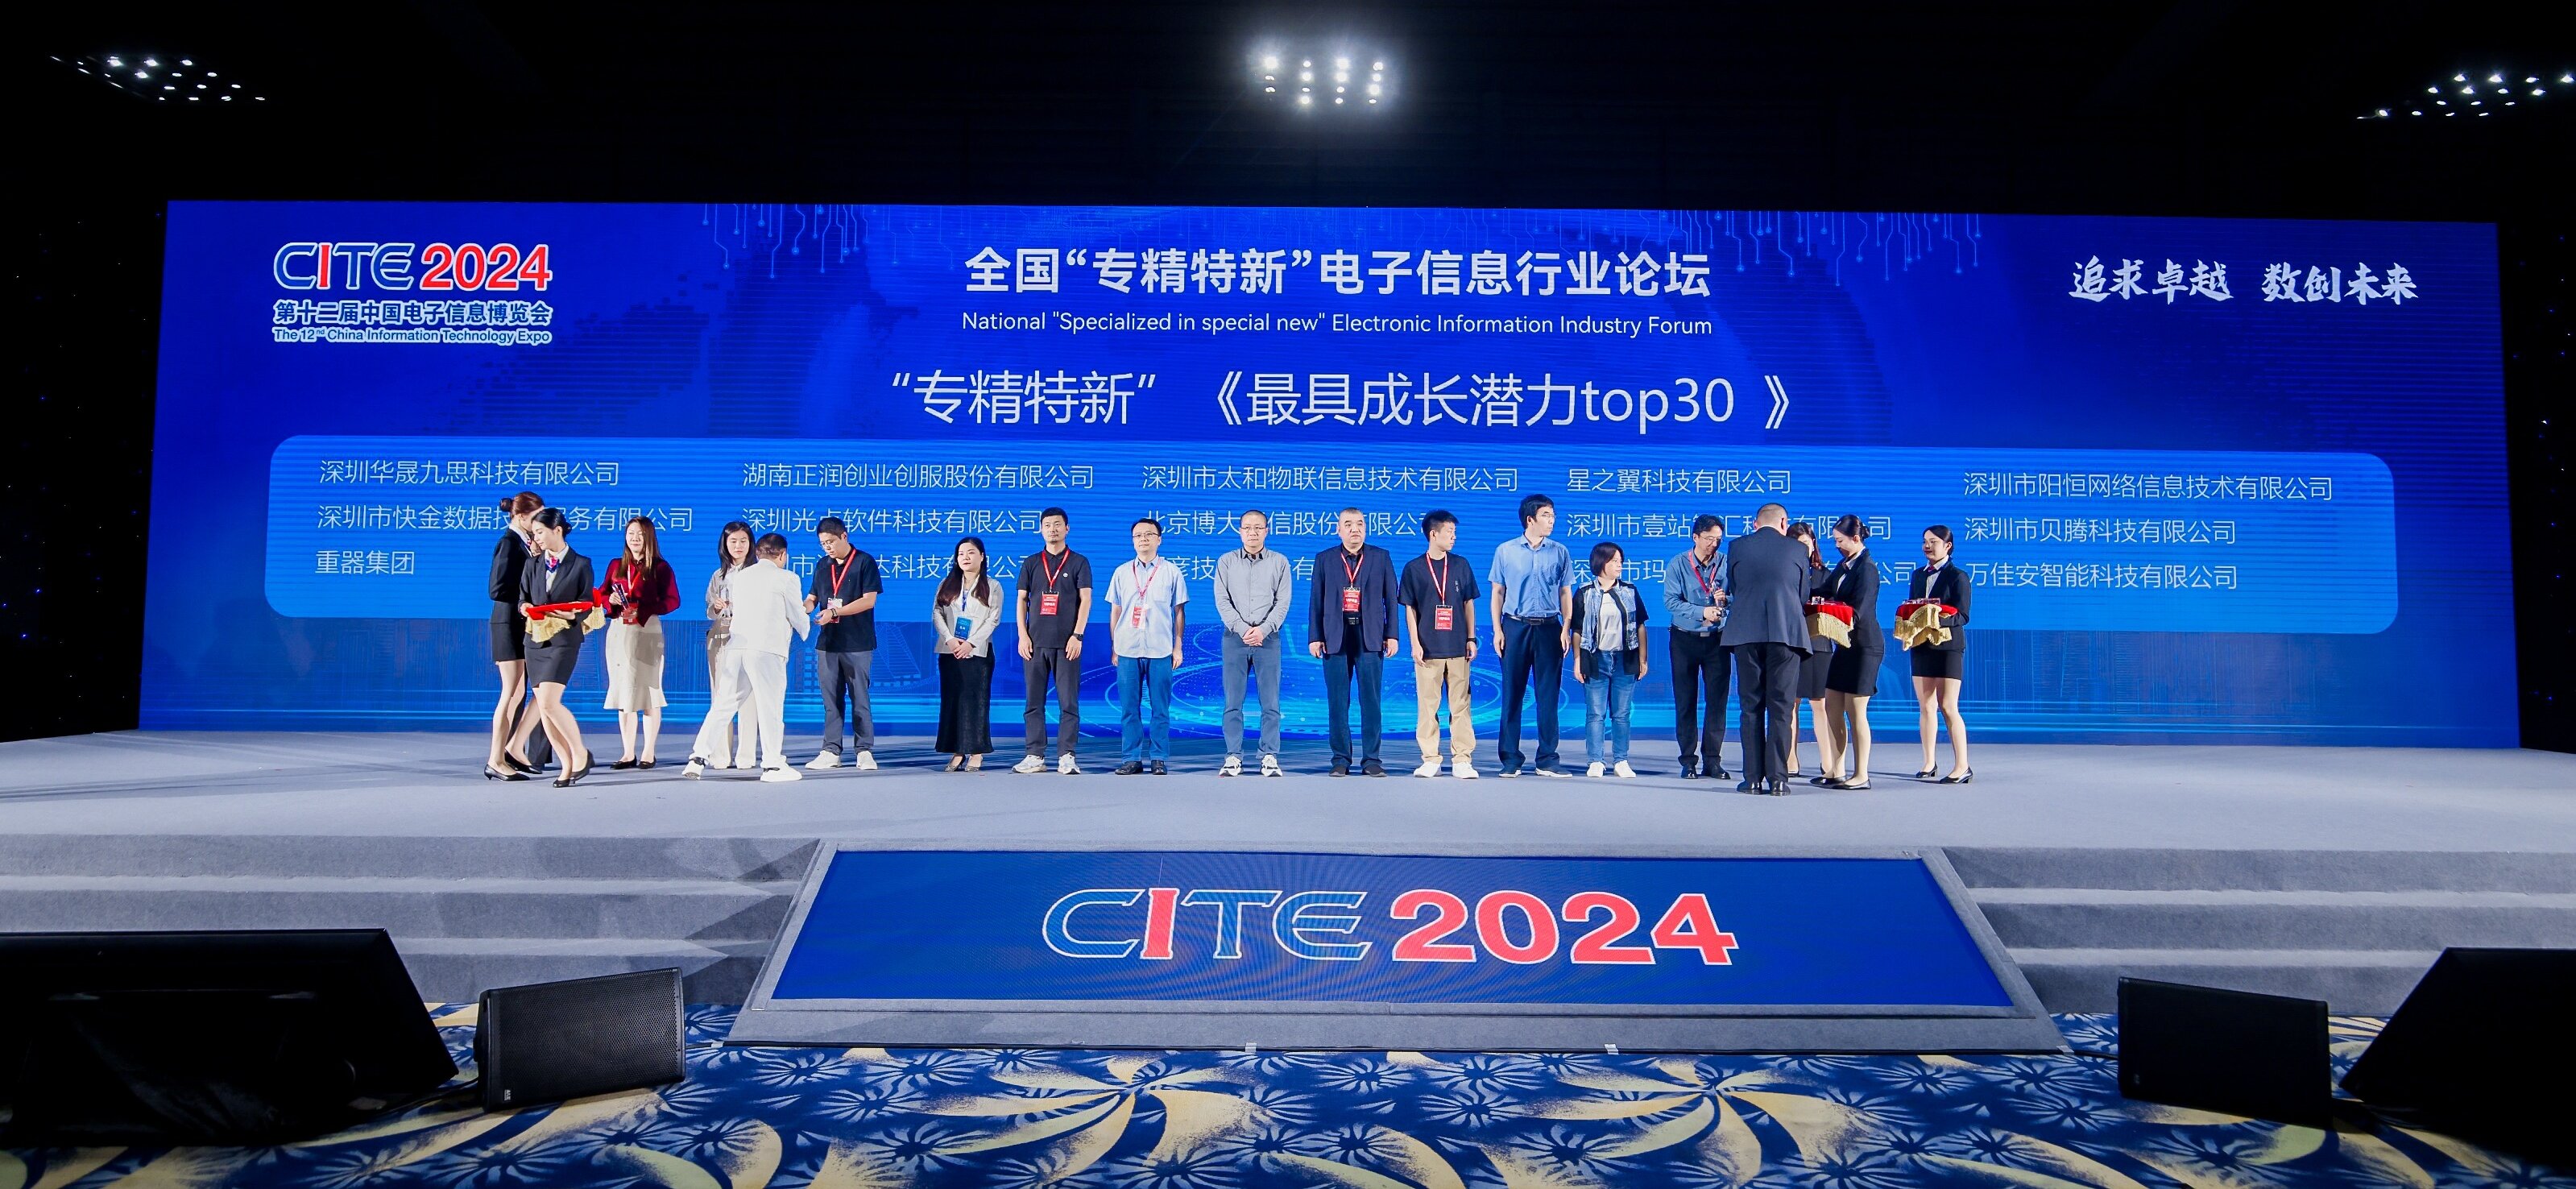 展望未來·潛力無限 | 熱烈祝賀貝騰科技入選CITE2024全國“專精特新”《最具成長潛力Top30》